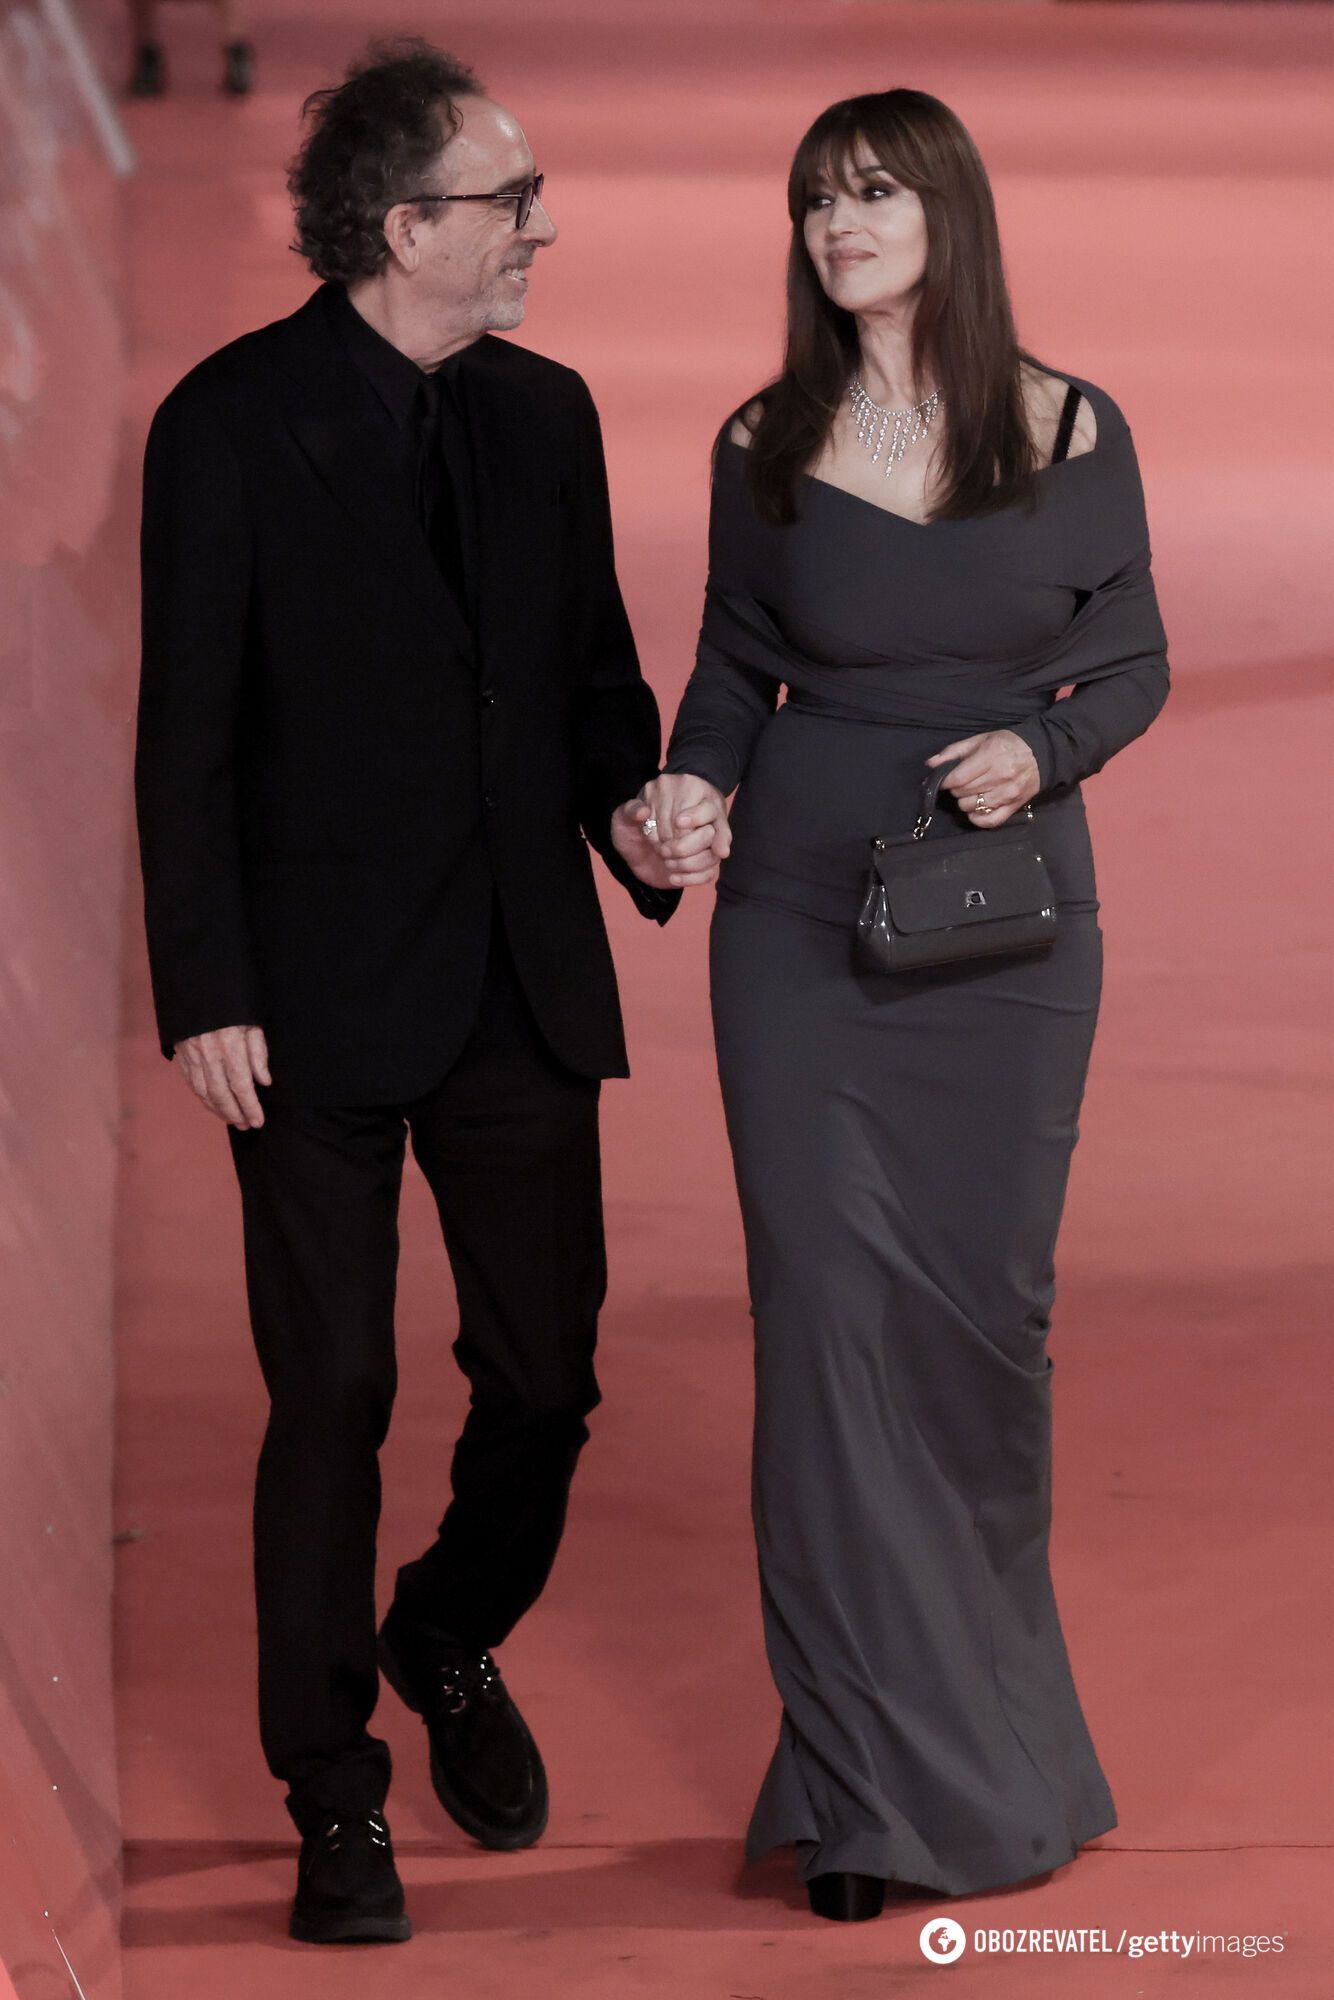 59-letnia Monica Bellucci i 65-letni Tim Burton po raz pierwszy pojawili się publicznie po potwierdzeniu swojego romansu. Zdjęcie